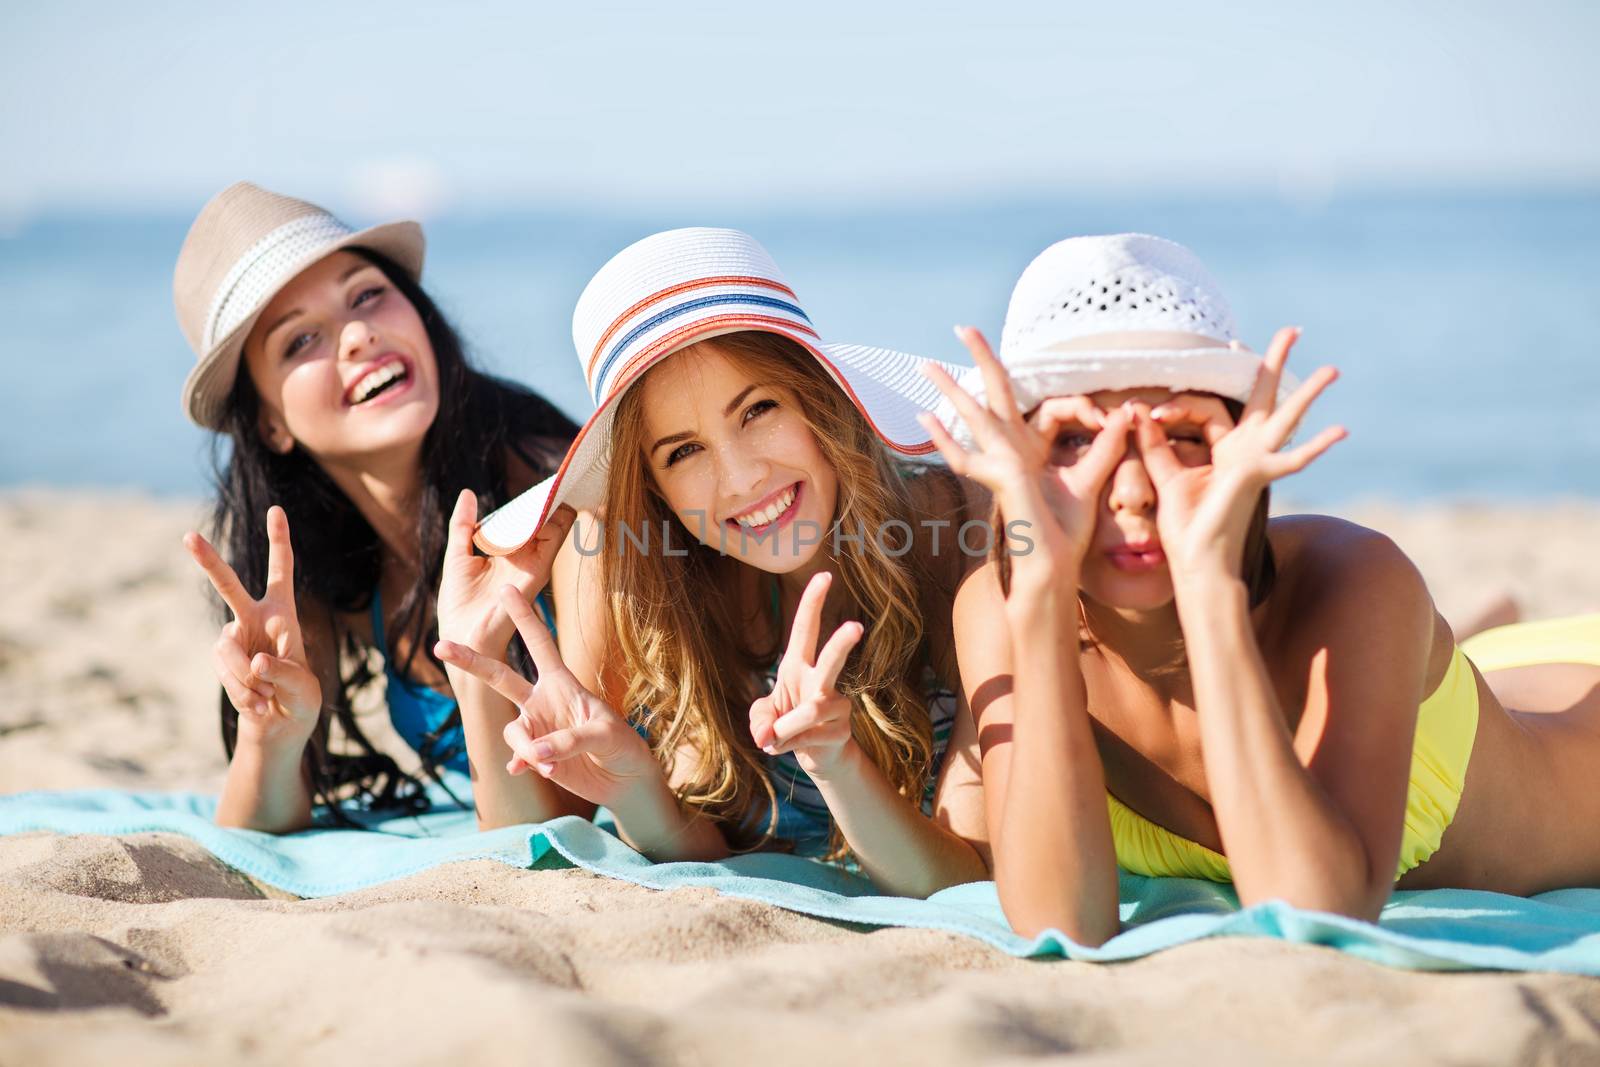 girls sunbathing on the beach by dolgachov